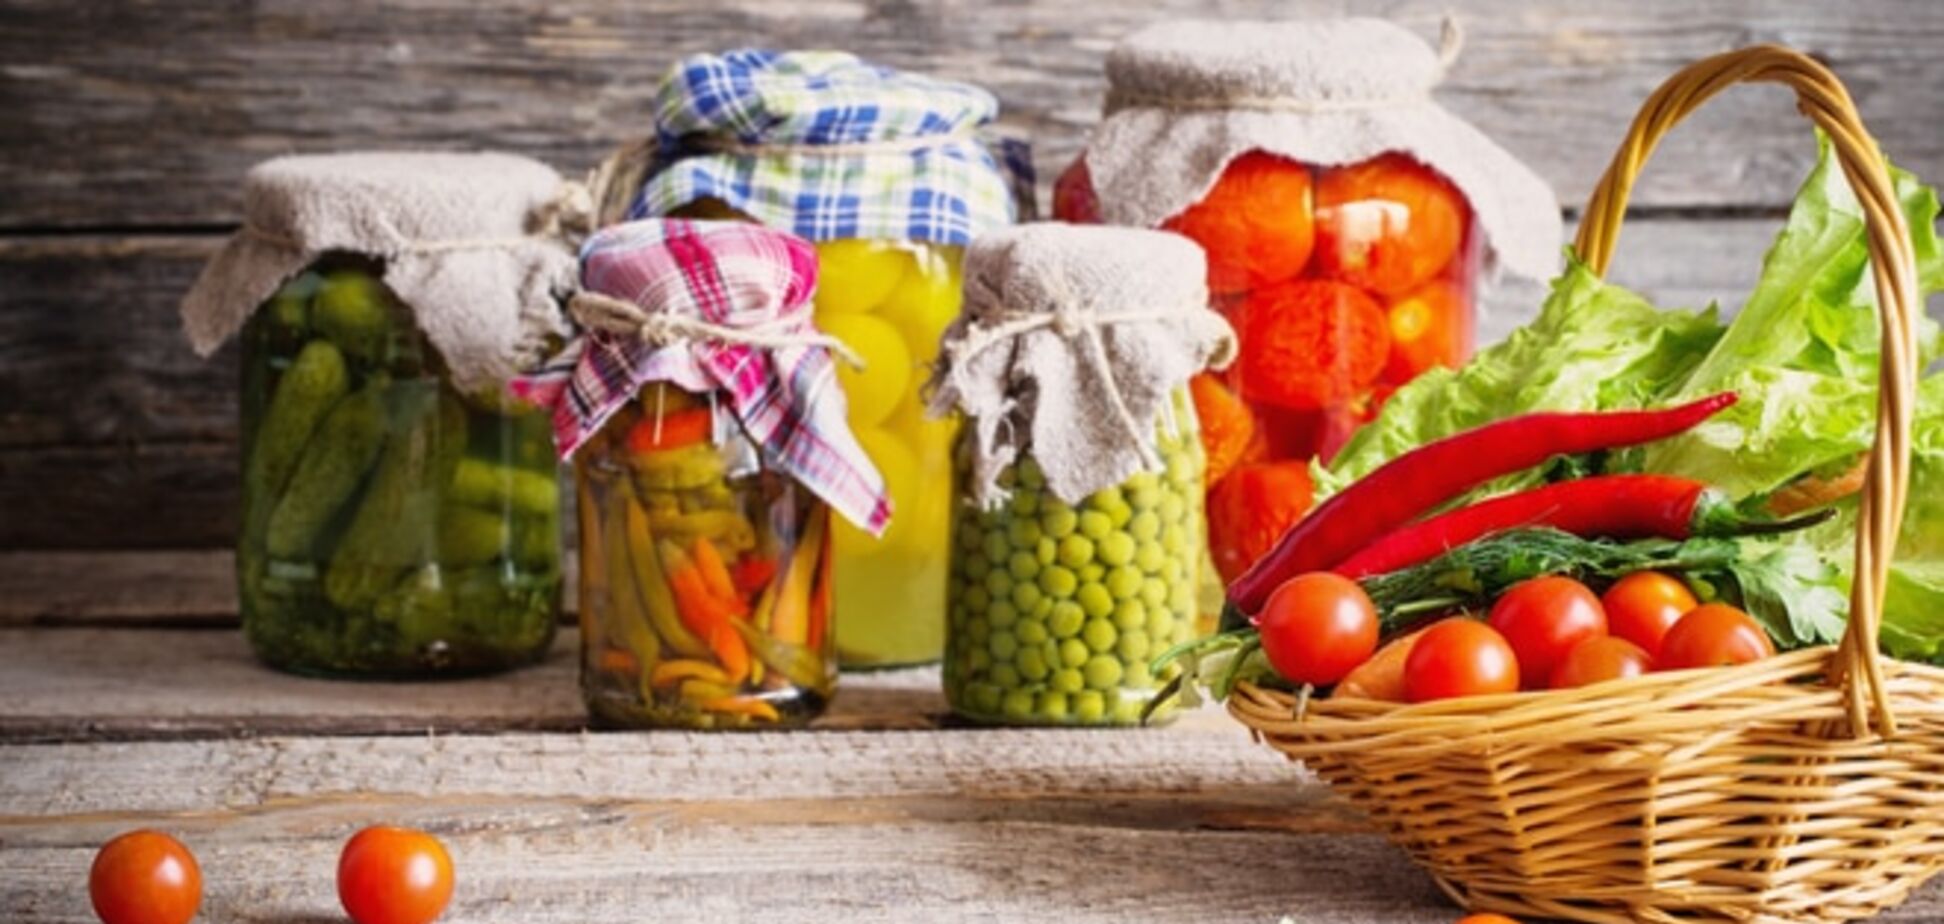 Лікар розповіла, як правильно консервувати овочі та фрукти, щоб не угробити здоров'я